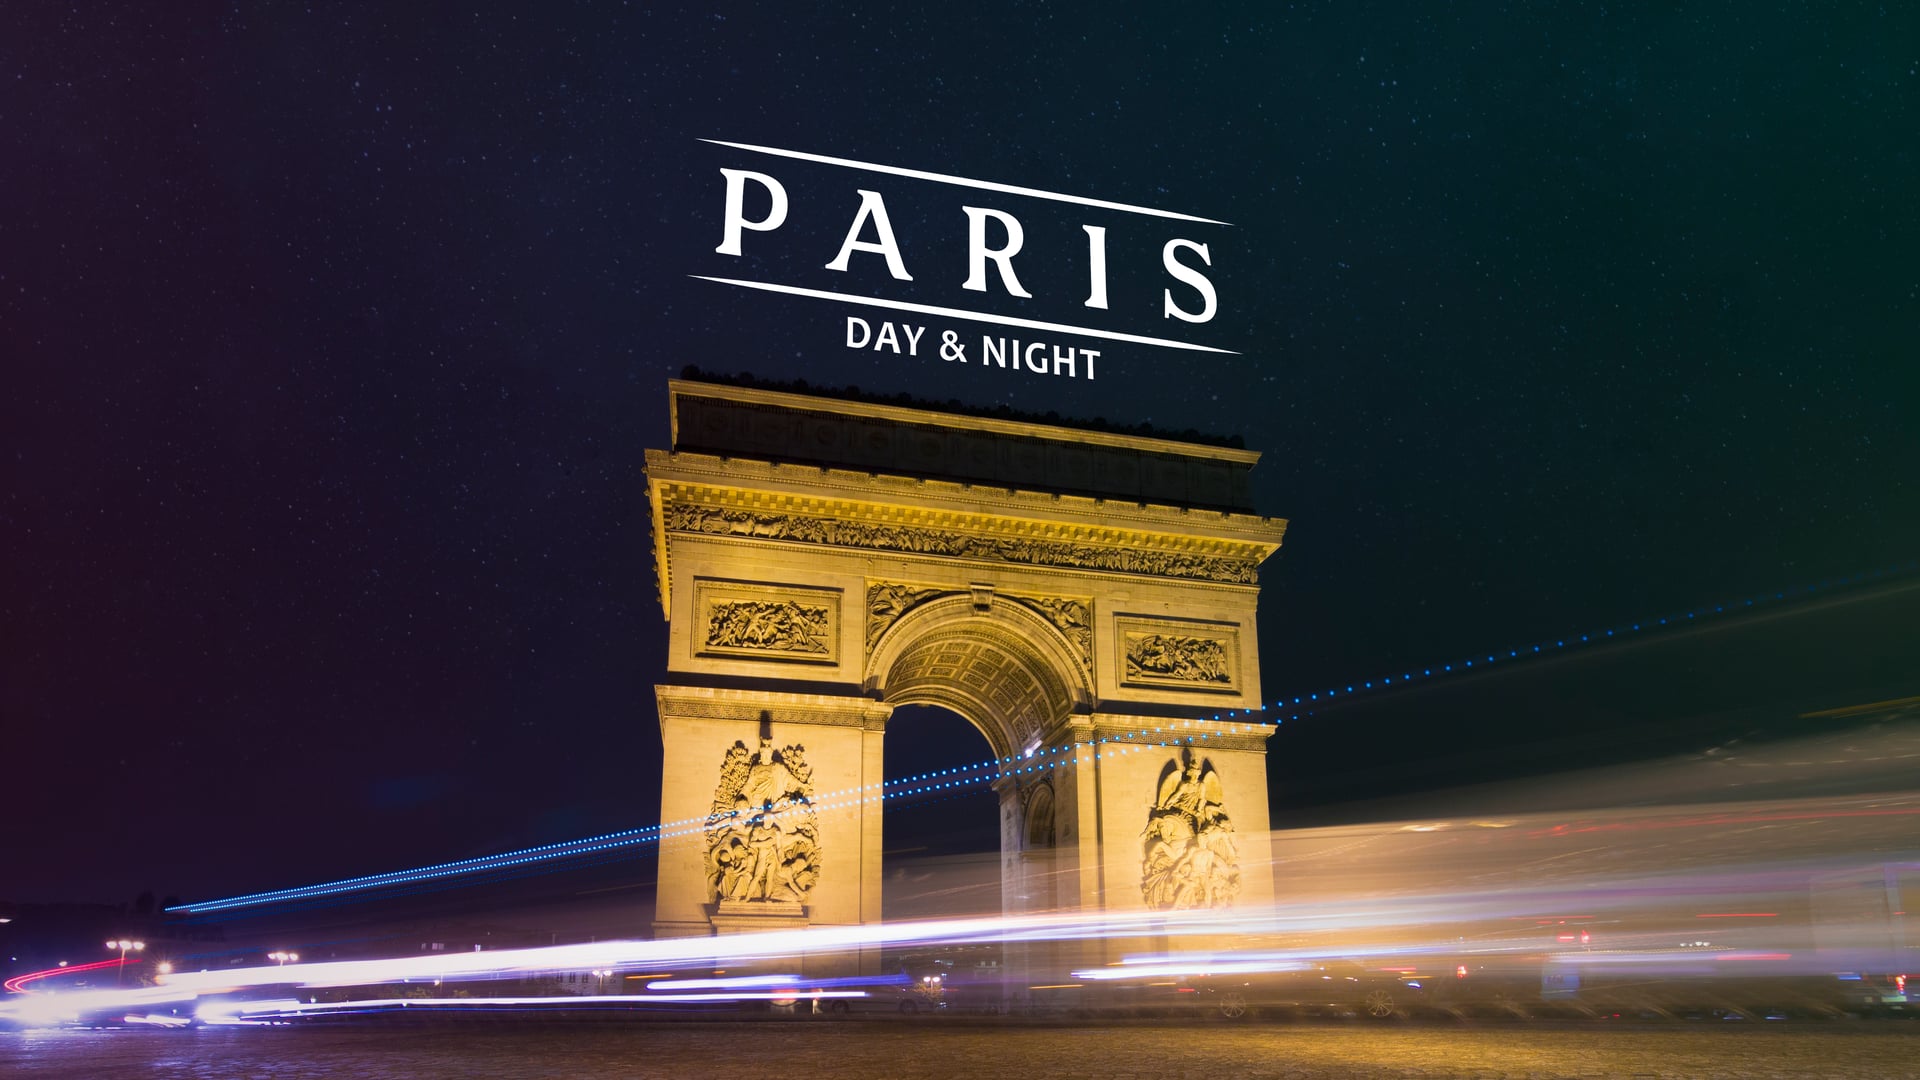 Париж. Париж днем. Наружная реклама Парижа ночью. Париж наши дни. Одна ночь в париже